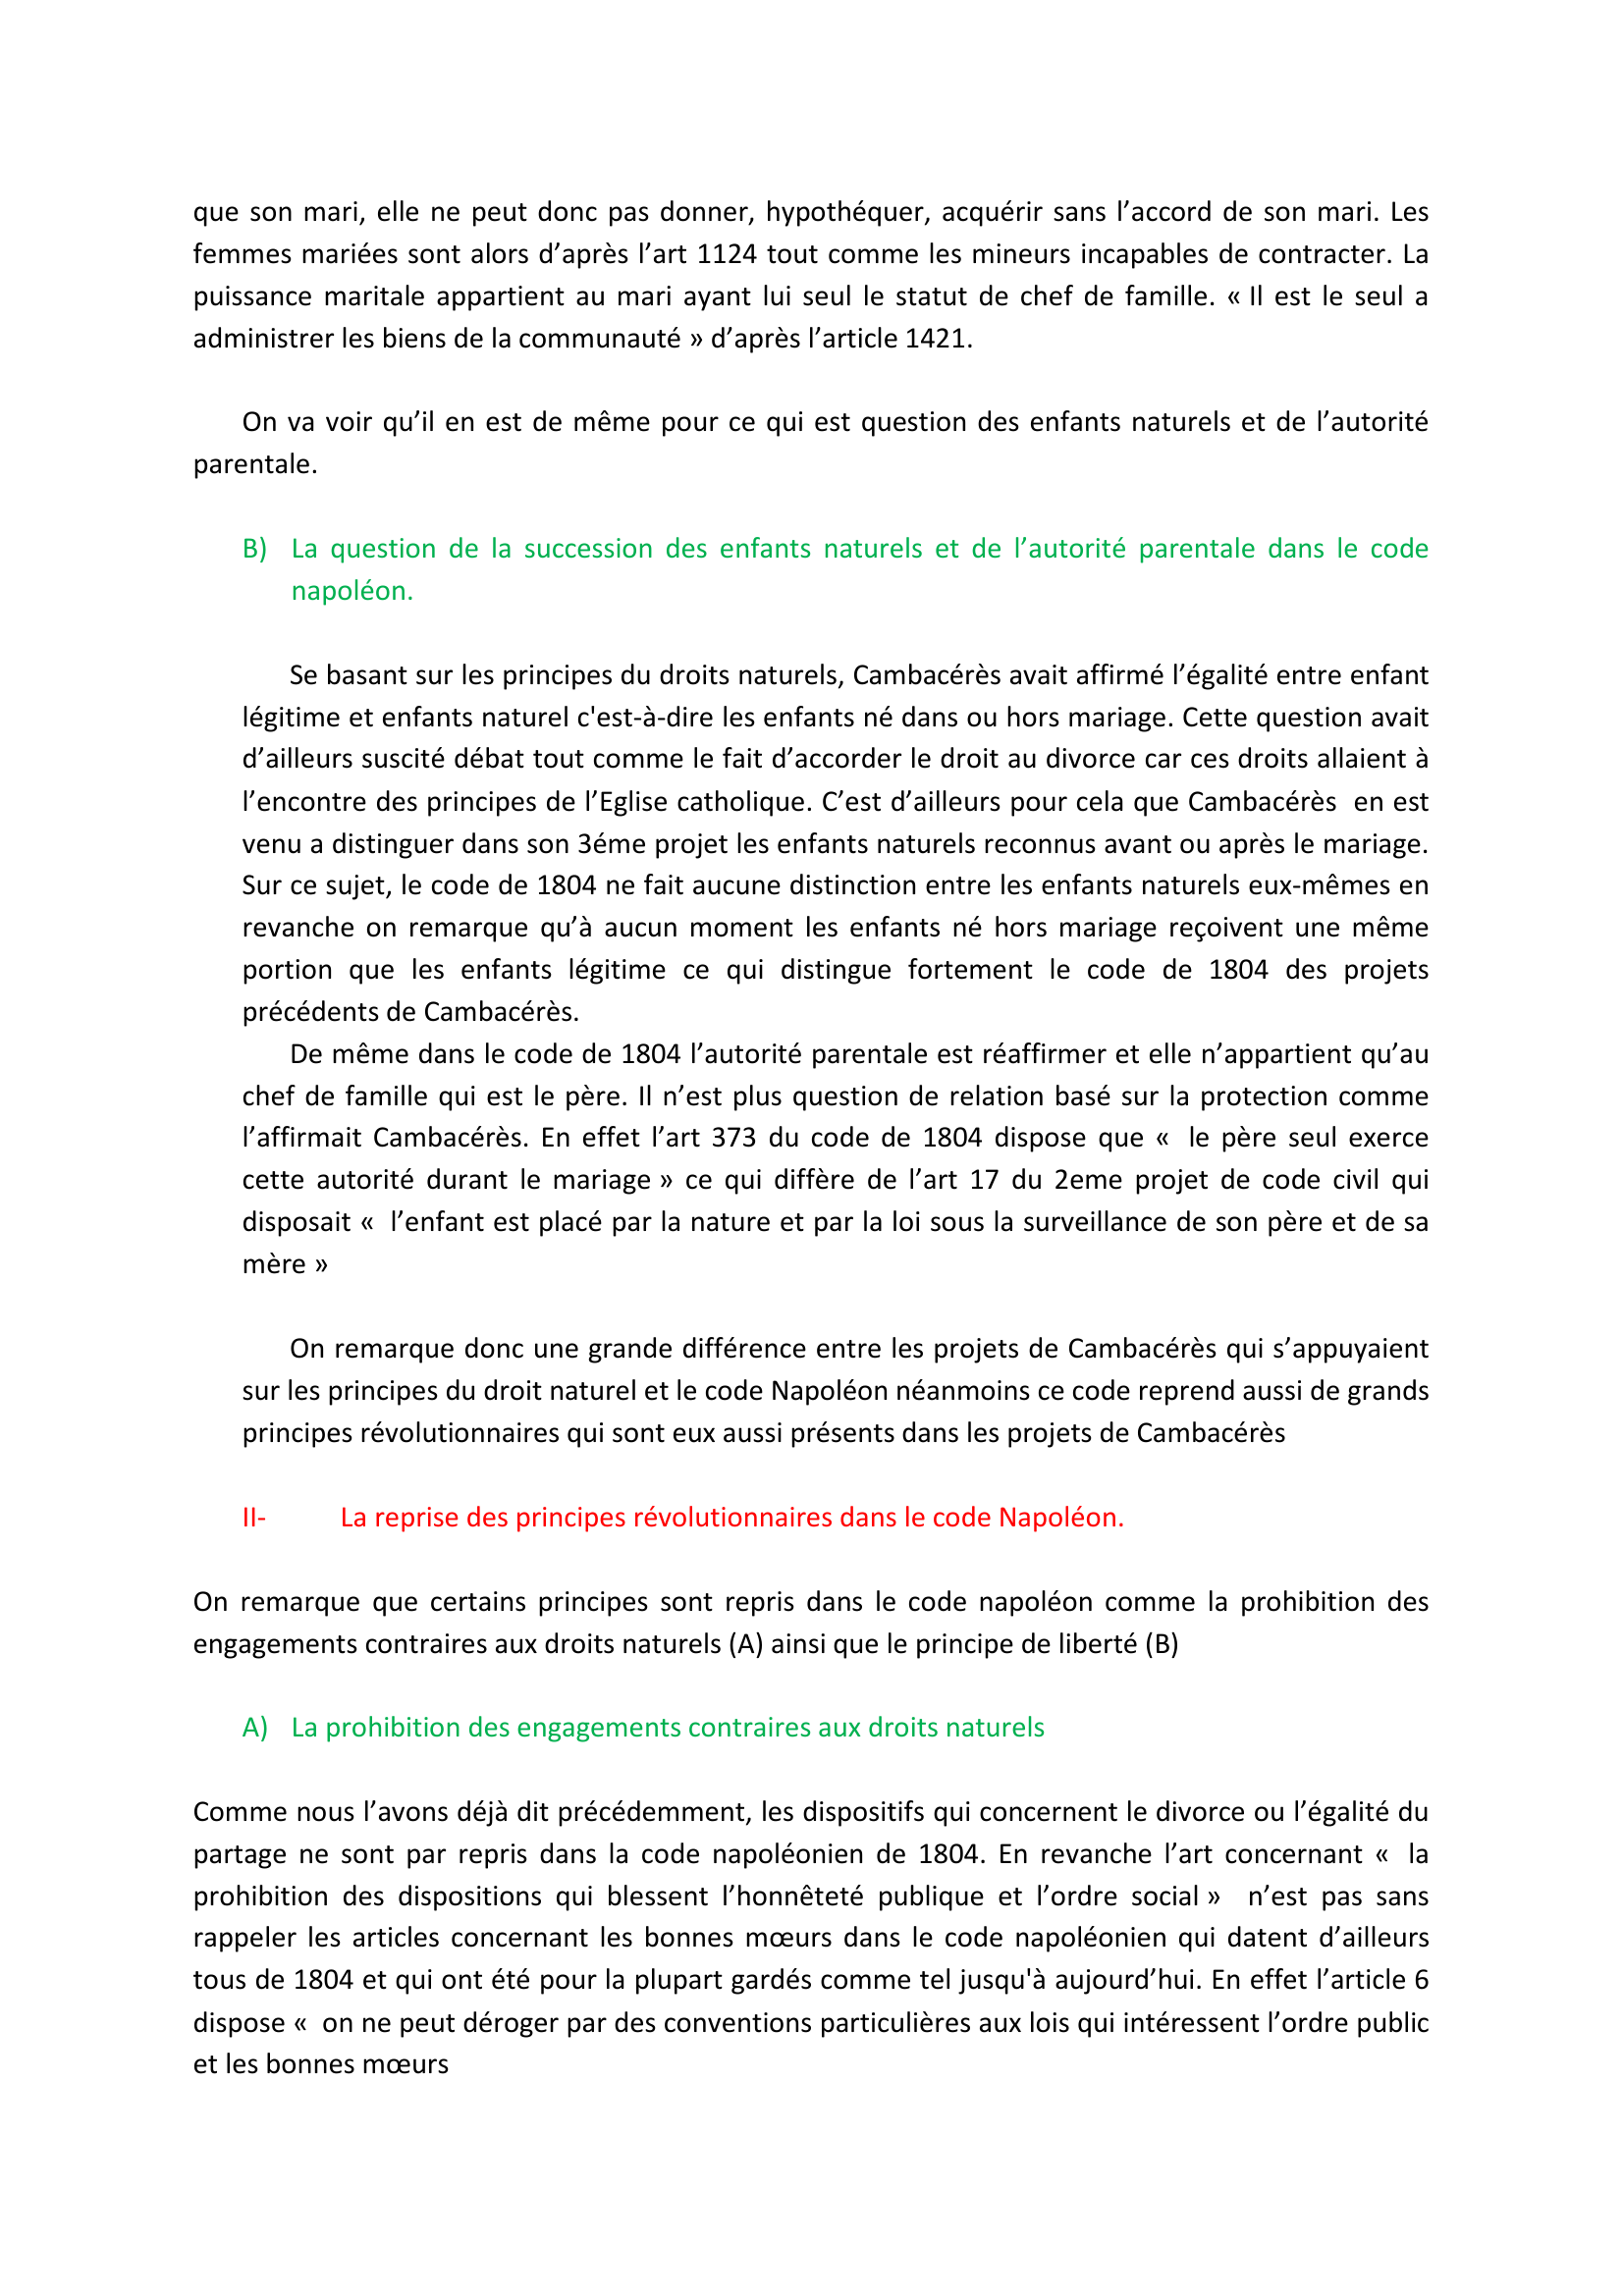 Prévisualisation du document « Le code Napoléon s'inscrit-il dans la continuité des projets de Cambacérès ? »